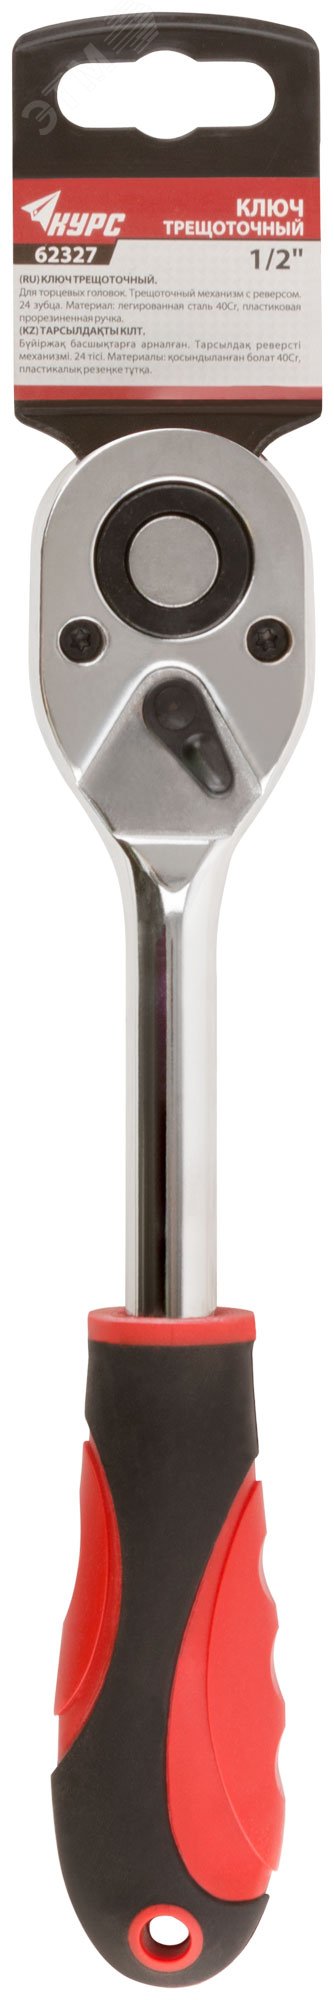 Вороток (трещотка), механизм легированная сталь 40Cr, пластиковая прорезиненная ручка, 1/2'', 24 зубца 62327 КУРС - превью 3